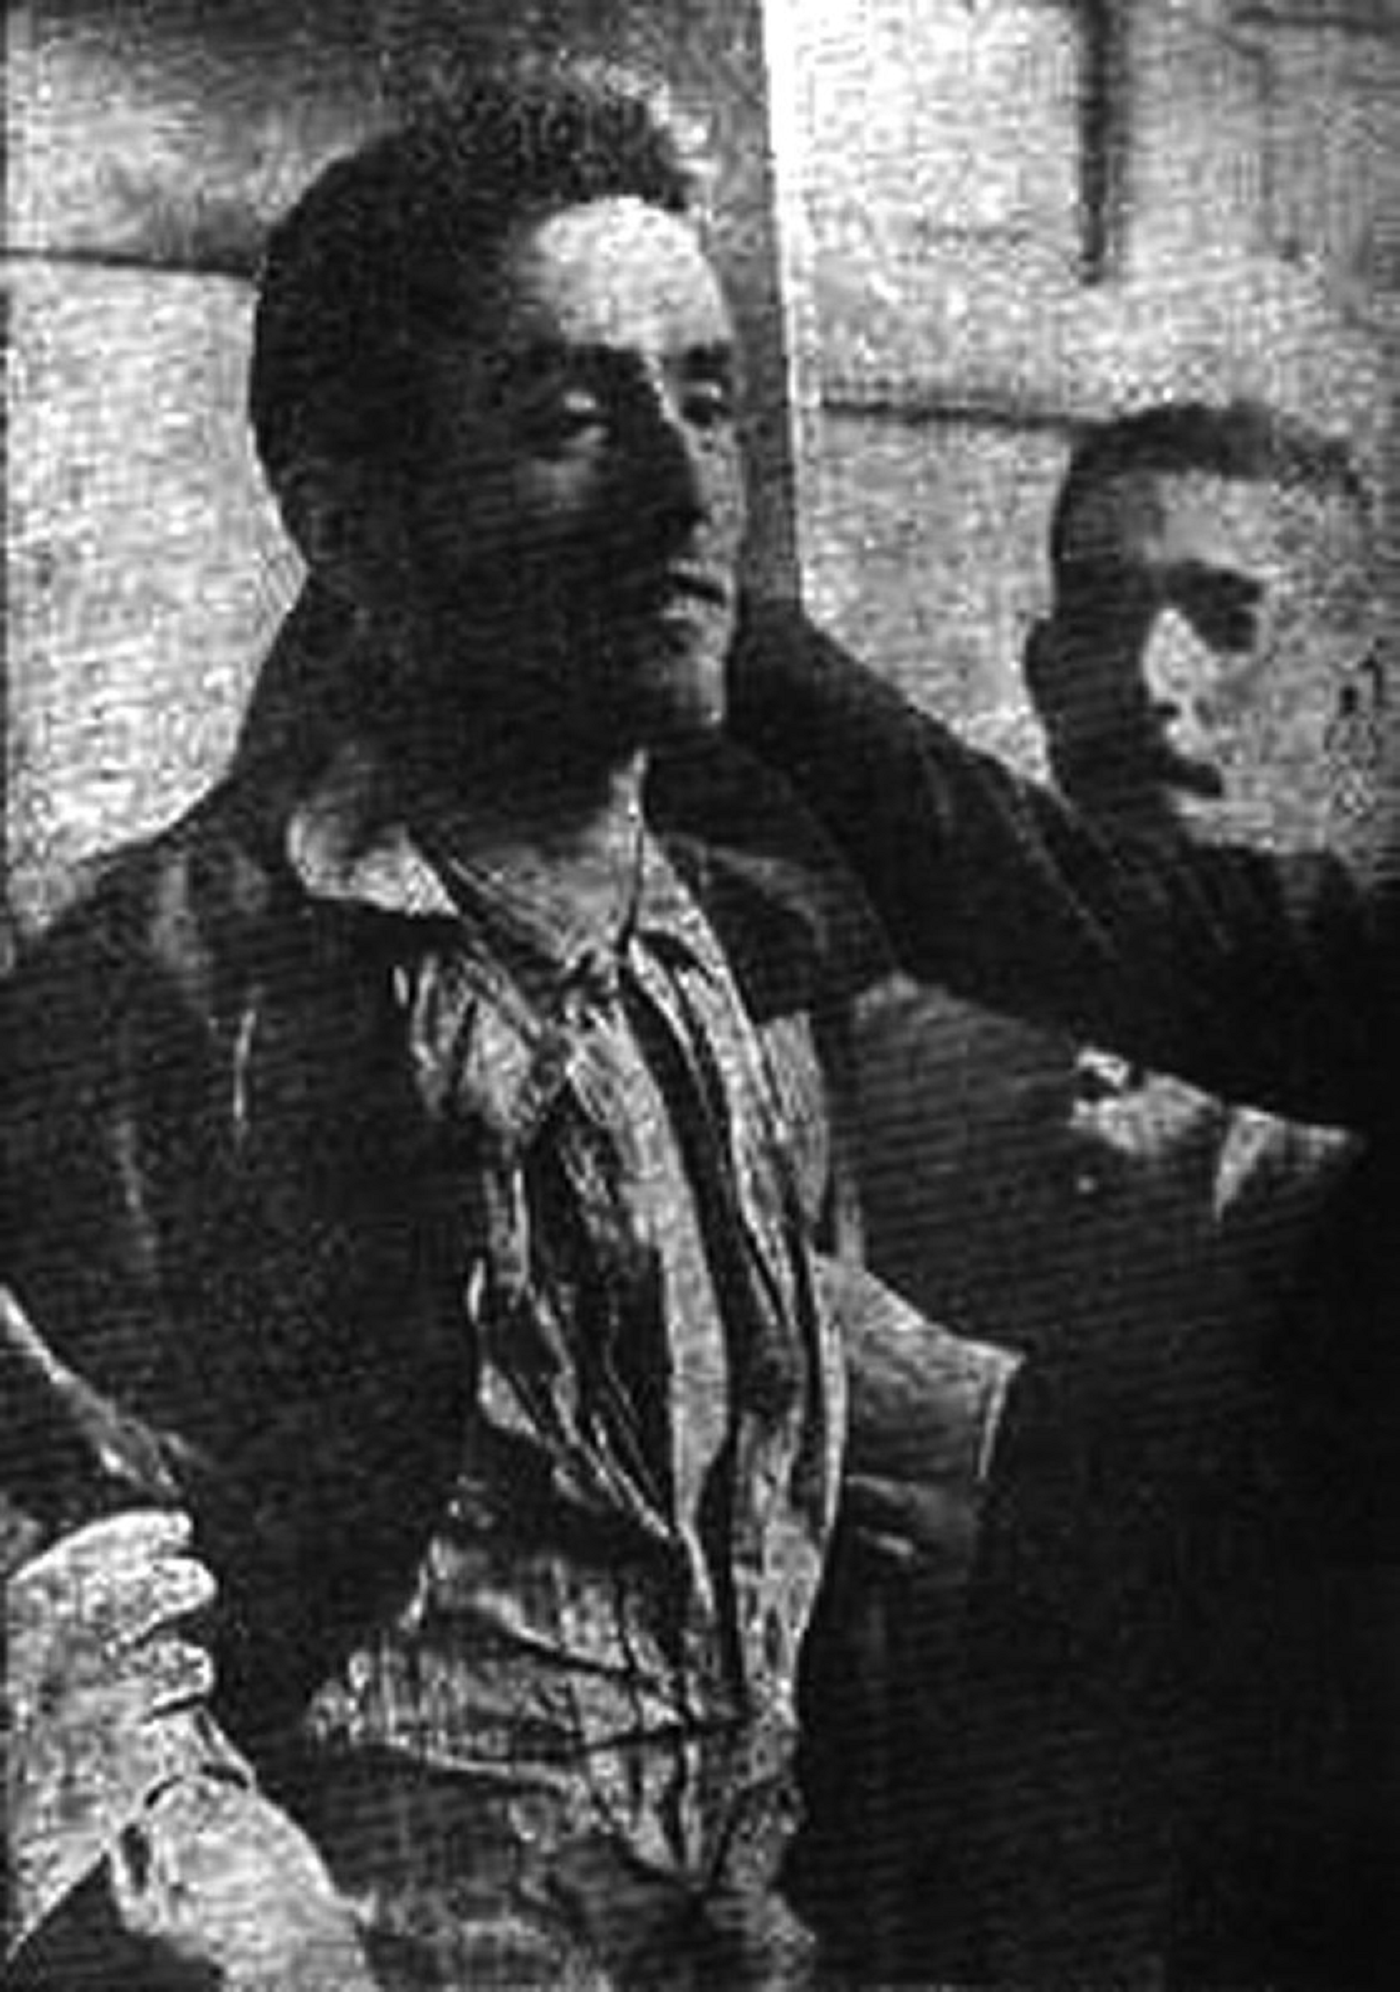 Asesinan a Mateu Morral, el anarquista que había atentado contra Alfonso XIII